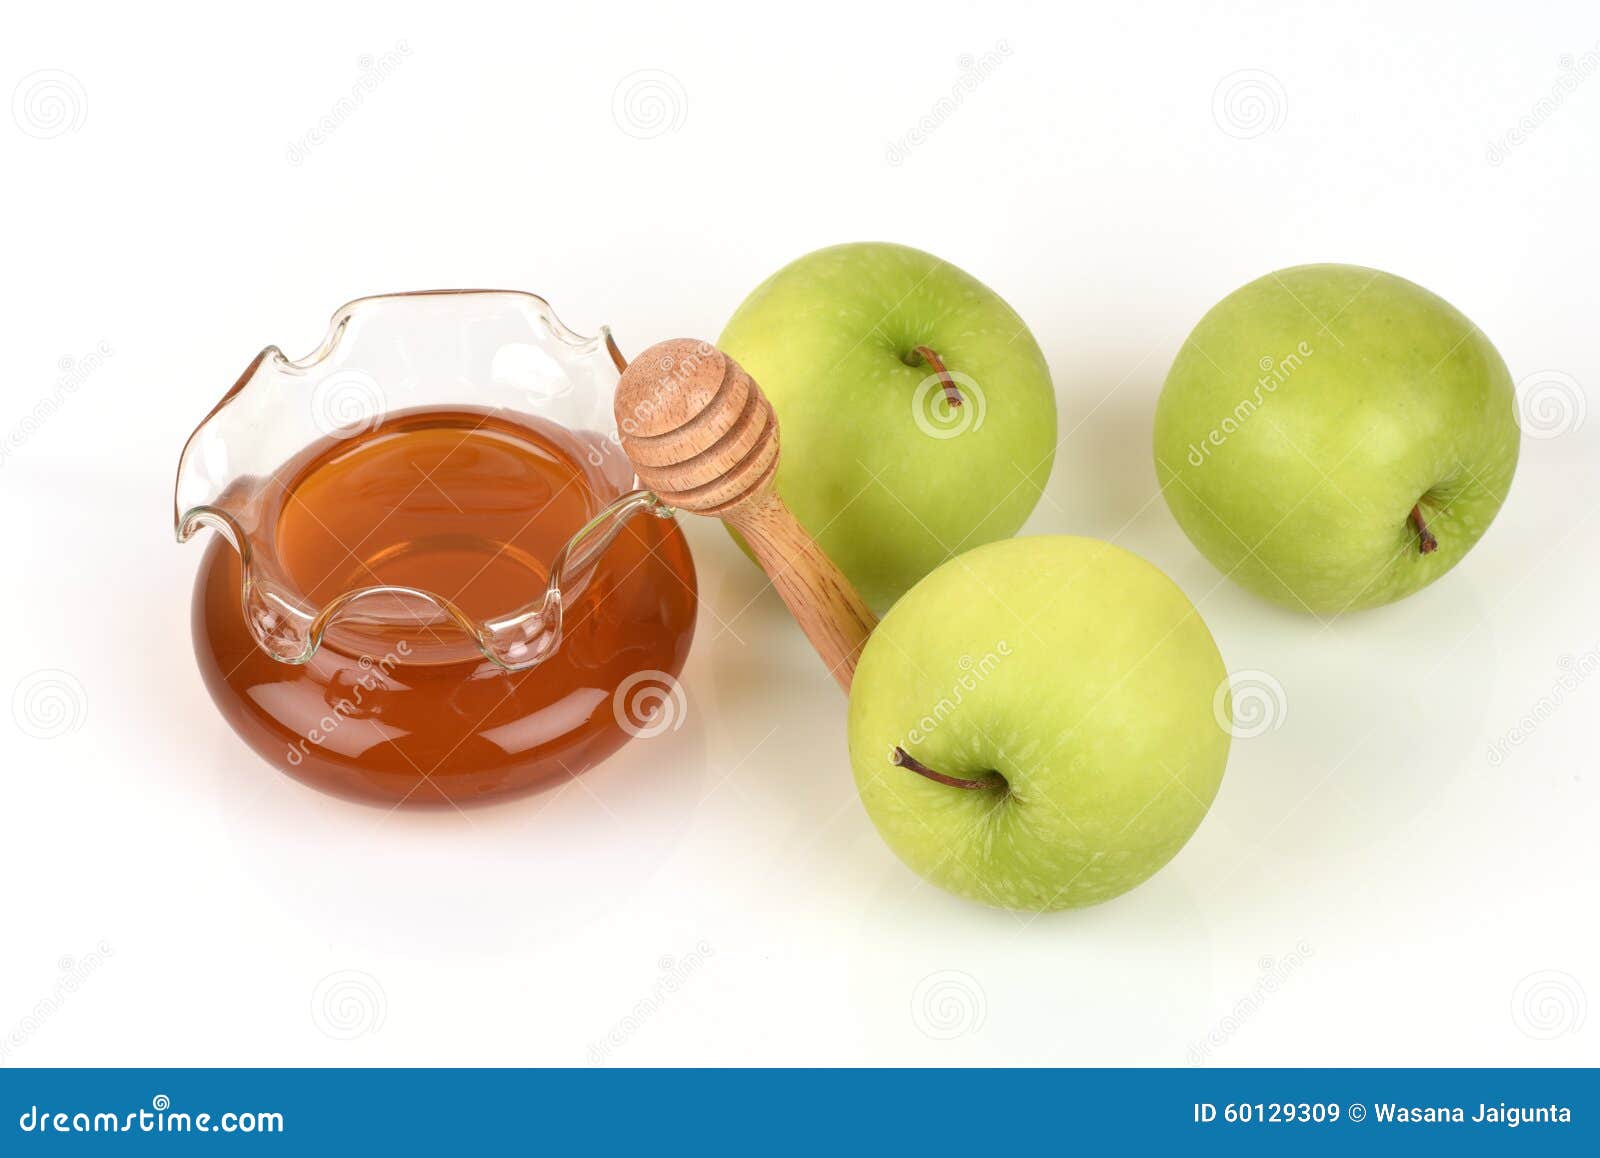 Маски из яблок. Маска из яблока для лица. Яблоко с медом для глаз. Маска для лица с яблоком и медом. Мед и зеленое яблоко для глаз.